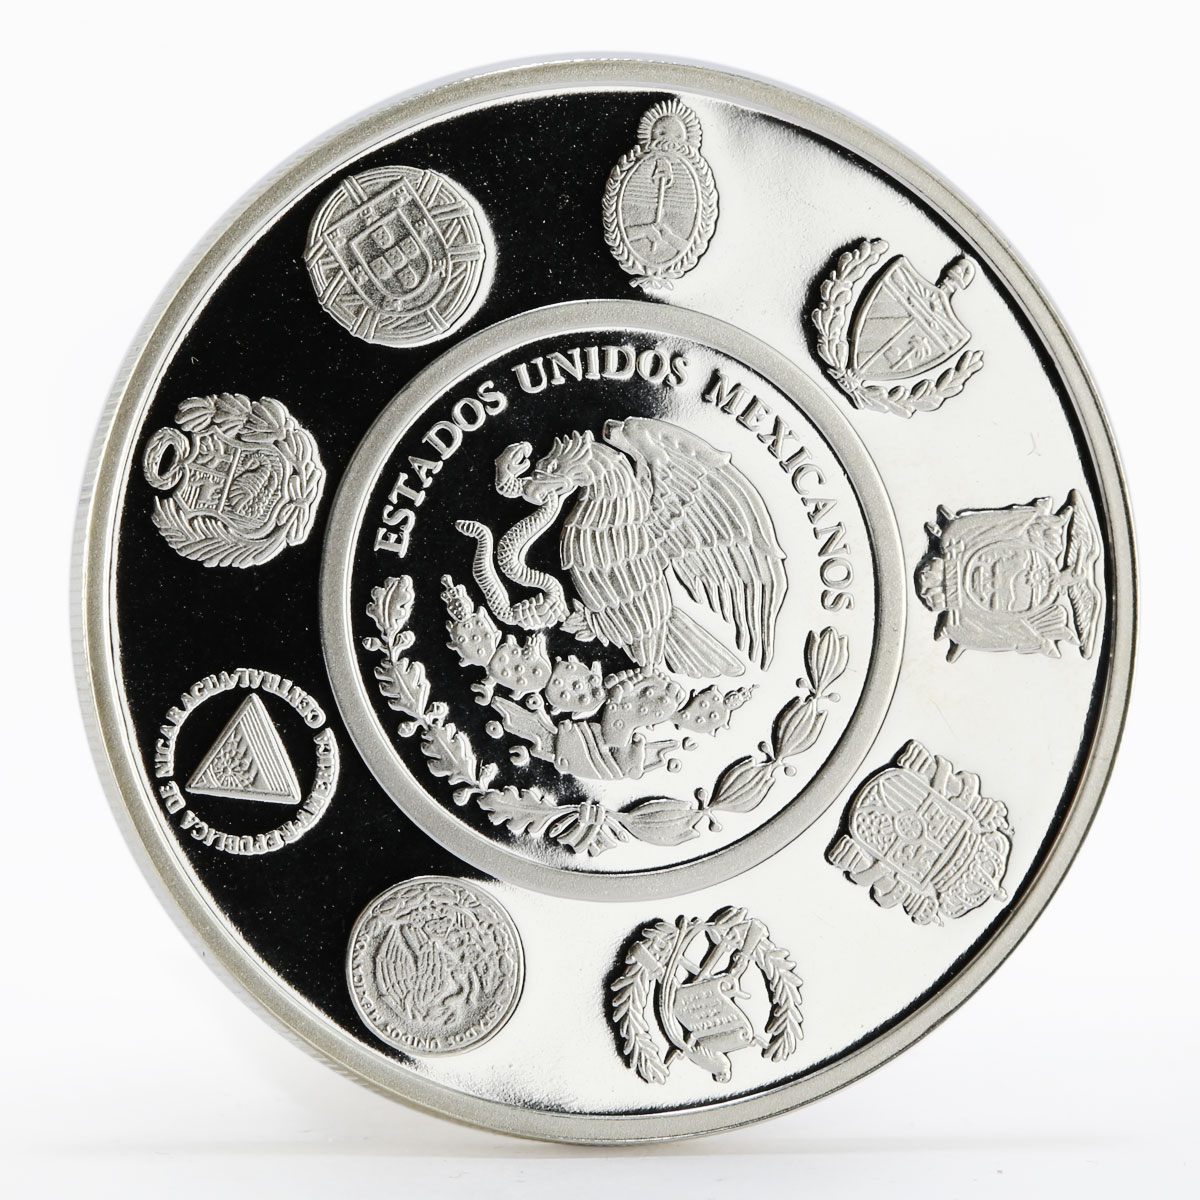 Mexico 5 Pesos Juego de pelota Olympics proof silver coin 2008